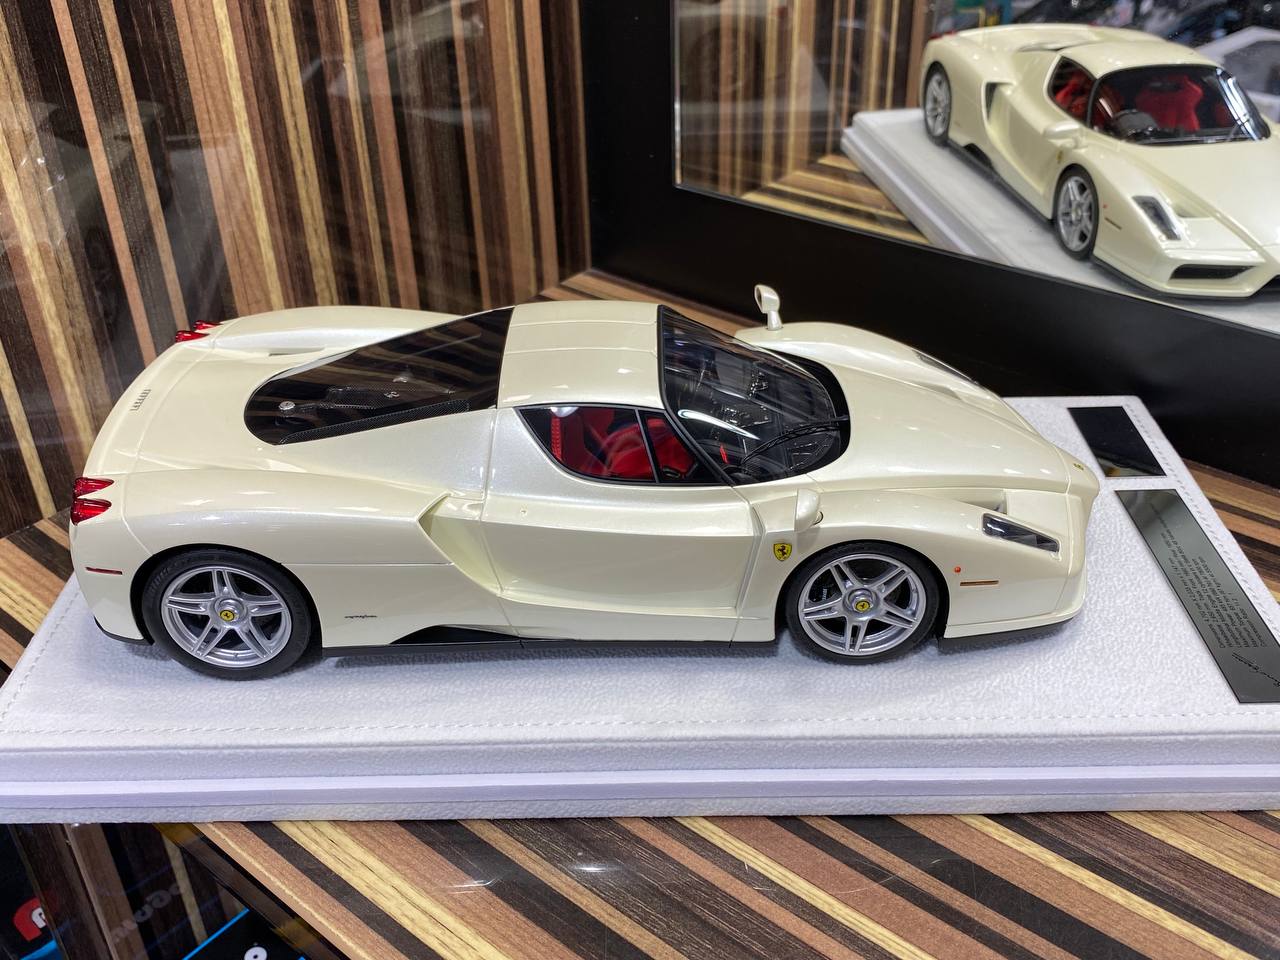 GAVIN Ferrari Enzo - White (1/18 Resin Model)|Sold in Dturman.com Dubai UAE.